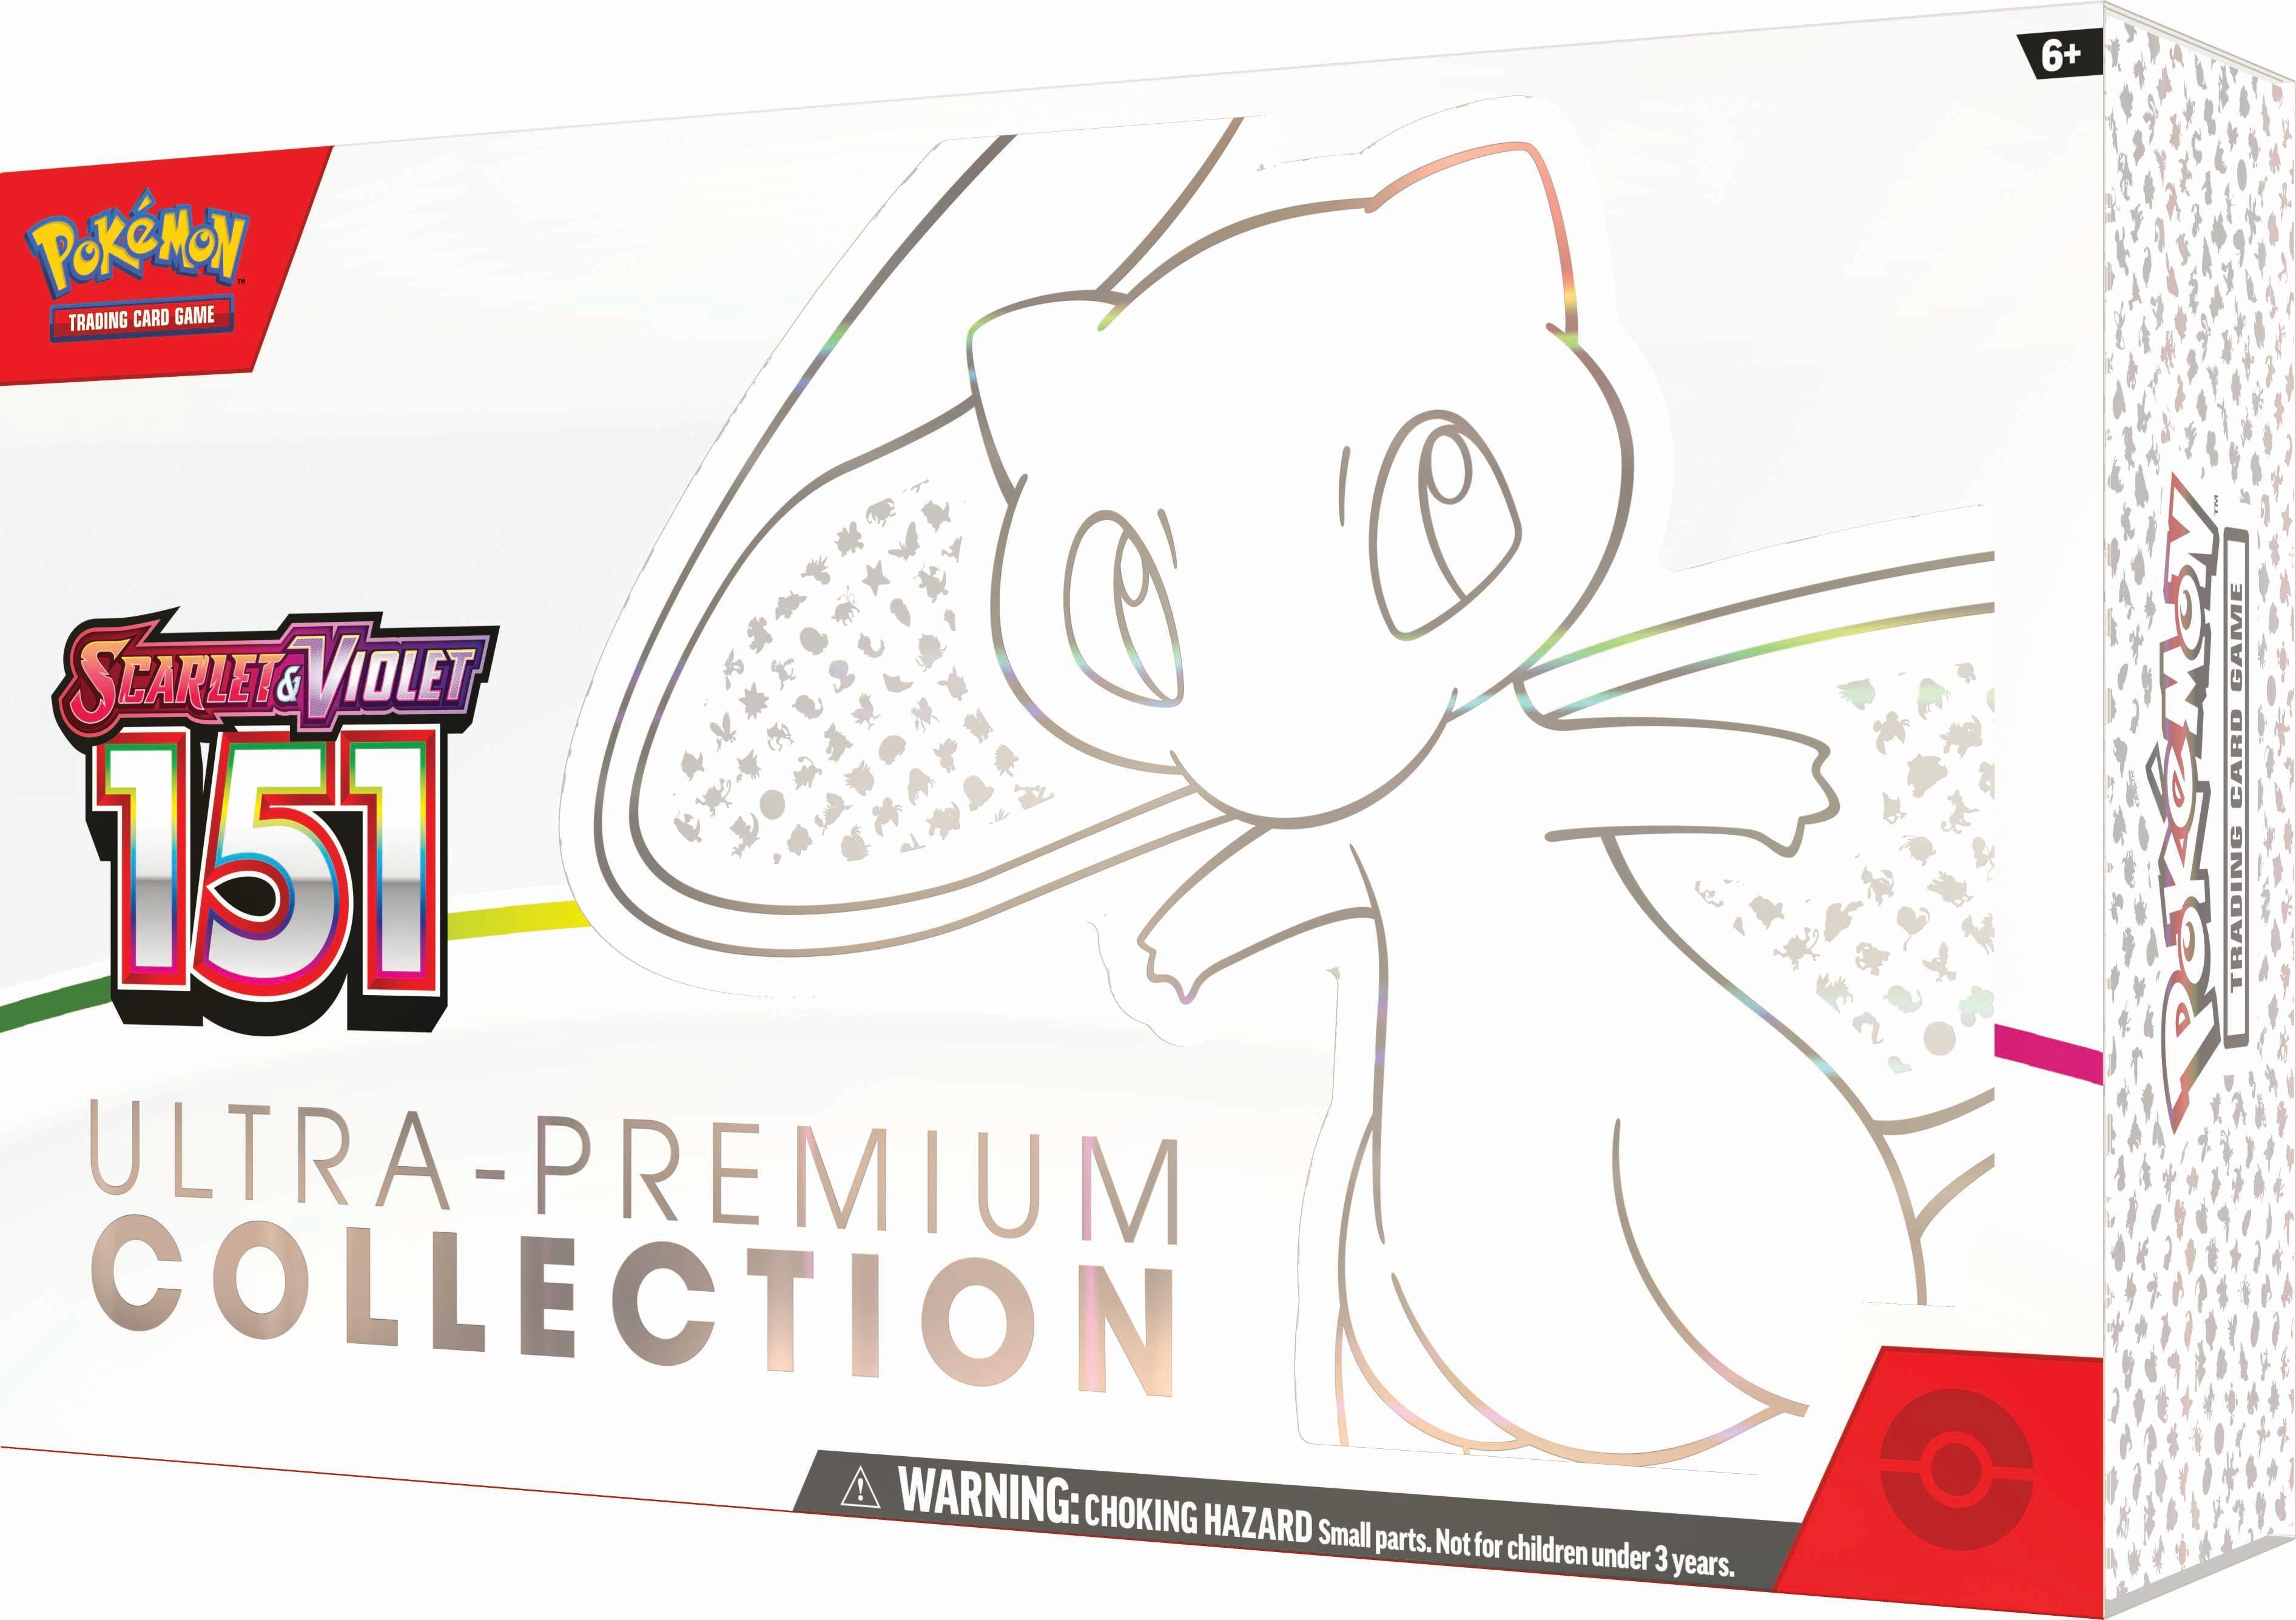 Pokemon TCG Scarlet & Violet 3.5 Pokemon 151 Alakazam Ex Box